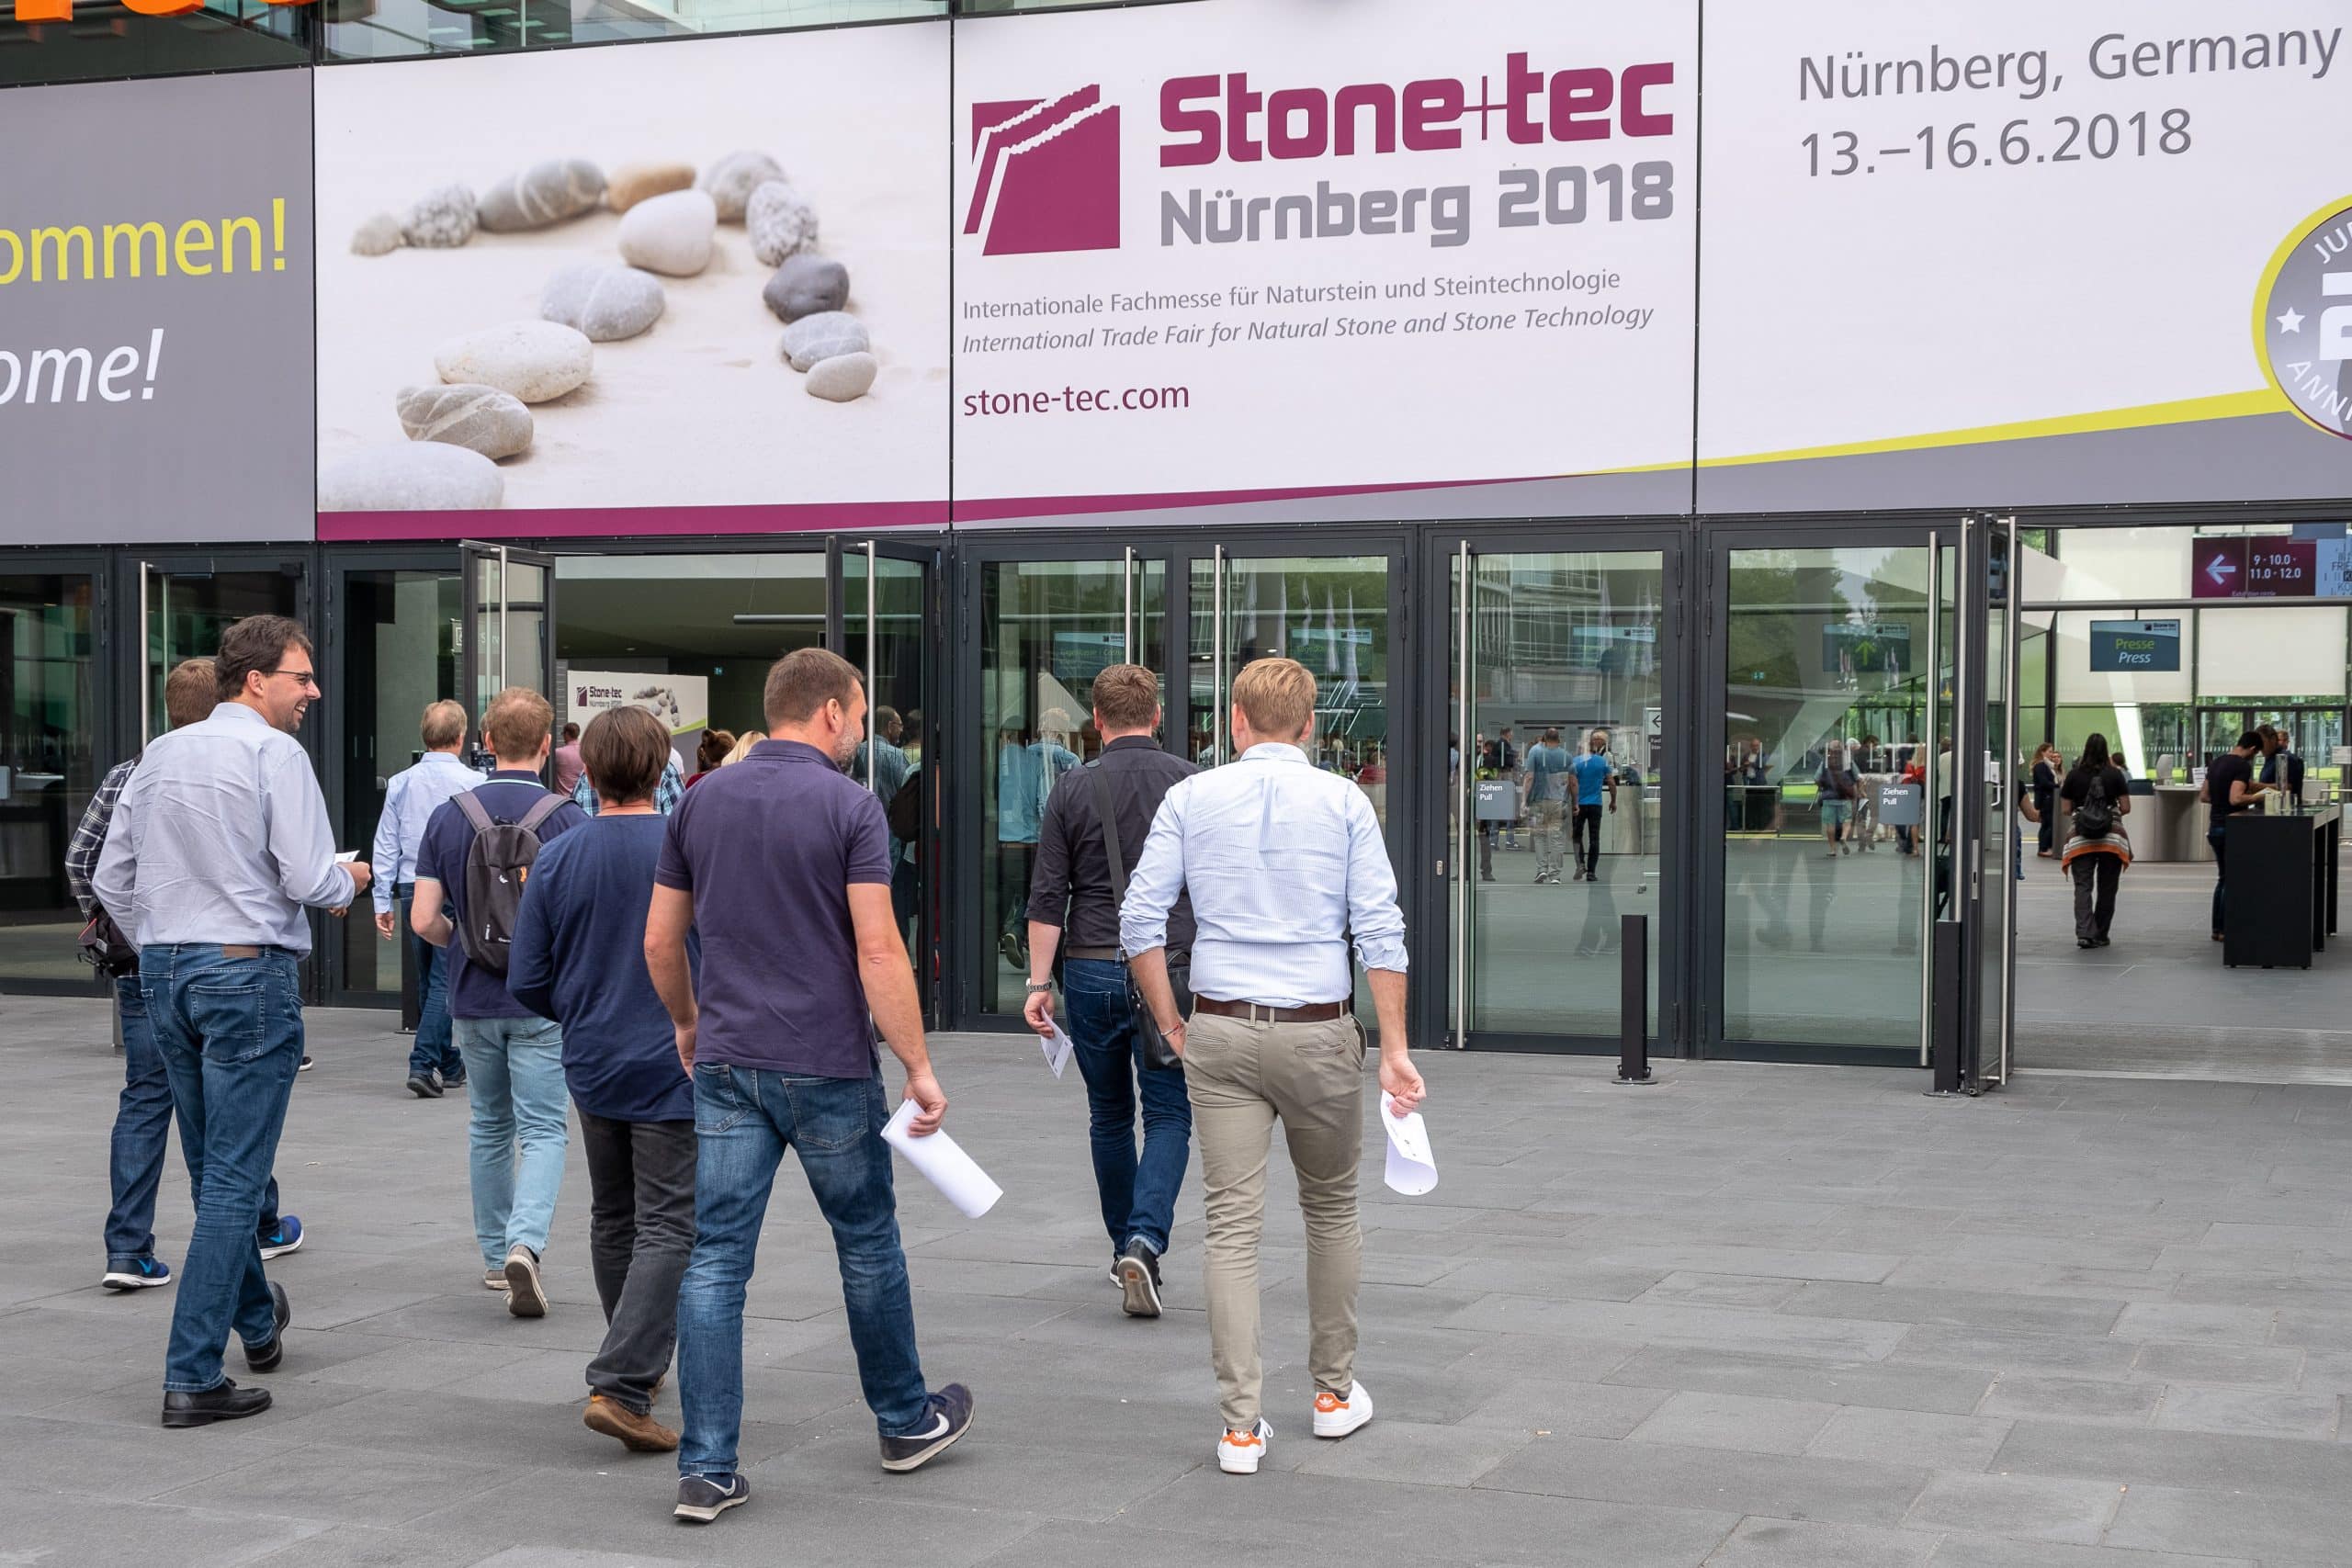 Die Stone+tec wird künftig unter dem neuen Veranstalter AFAG Messen und Ausstellungen GmbH